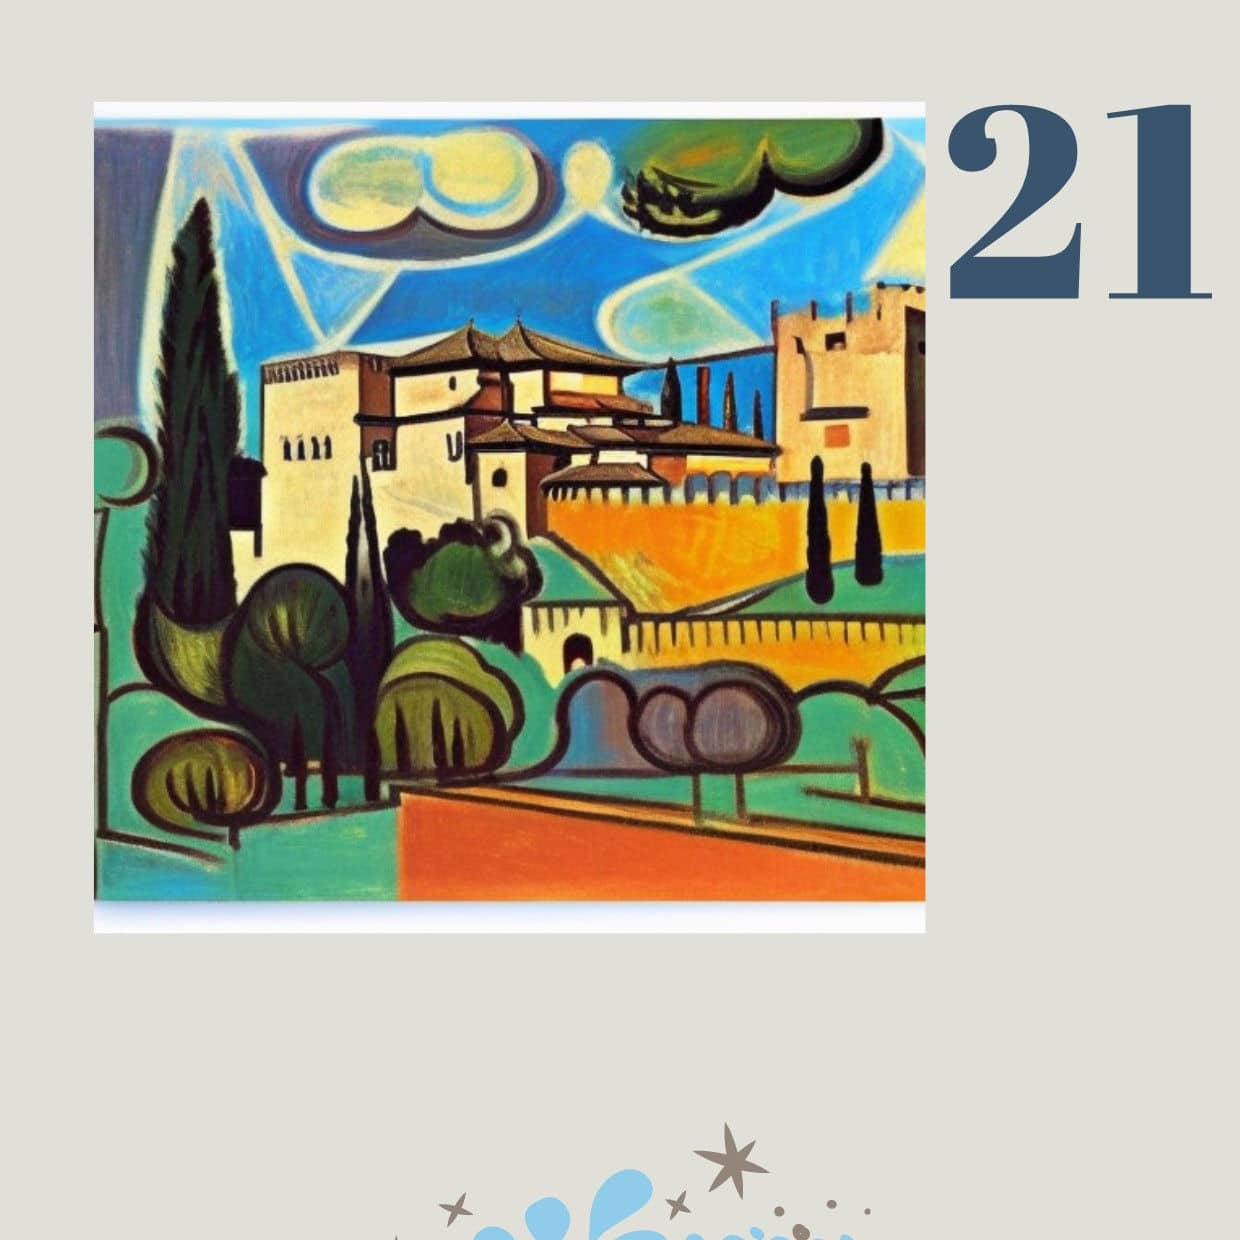 Die Alhambra im Stil von Pablo Picasso - dem spanischen Künstler der Moderne.